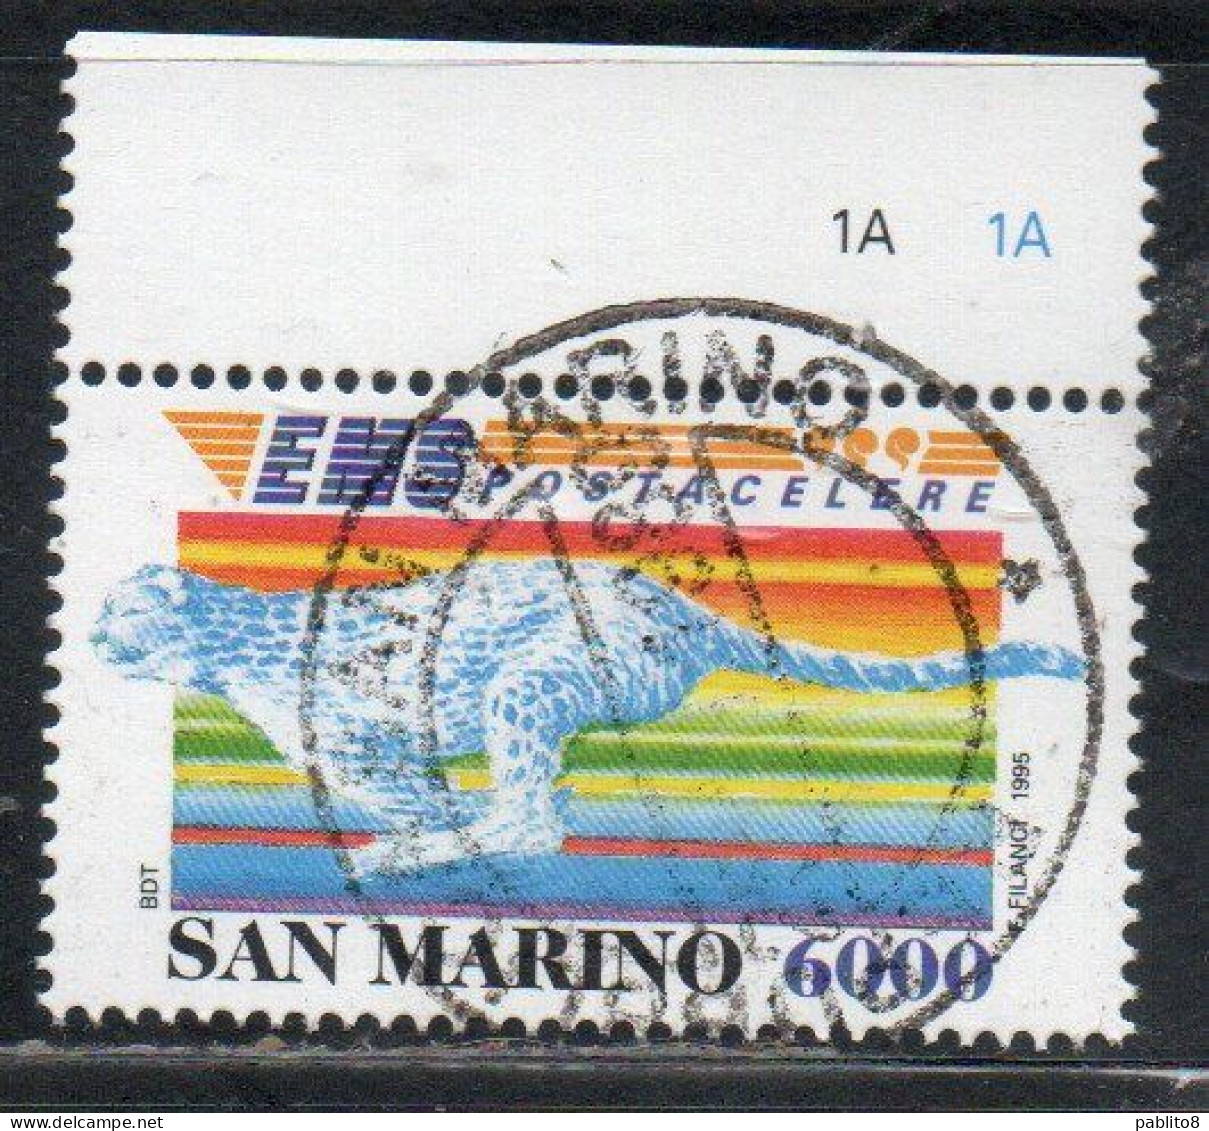 REPUBBLICA DI SAN MARINO 1995 SERVIZIO POSTALE POSTACELERE EMS POSTA CELERE LIRE 6000 USATO USED OBLITERE' - Used Stamps